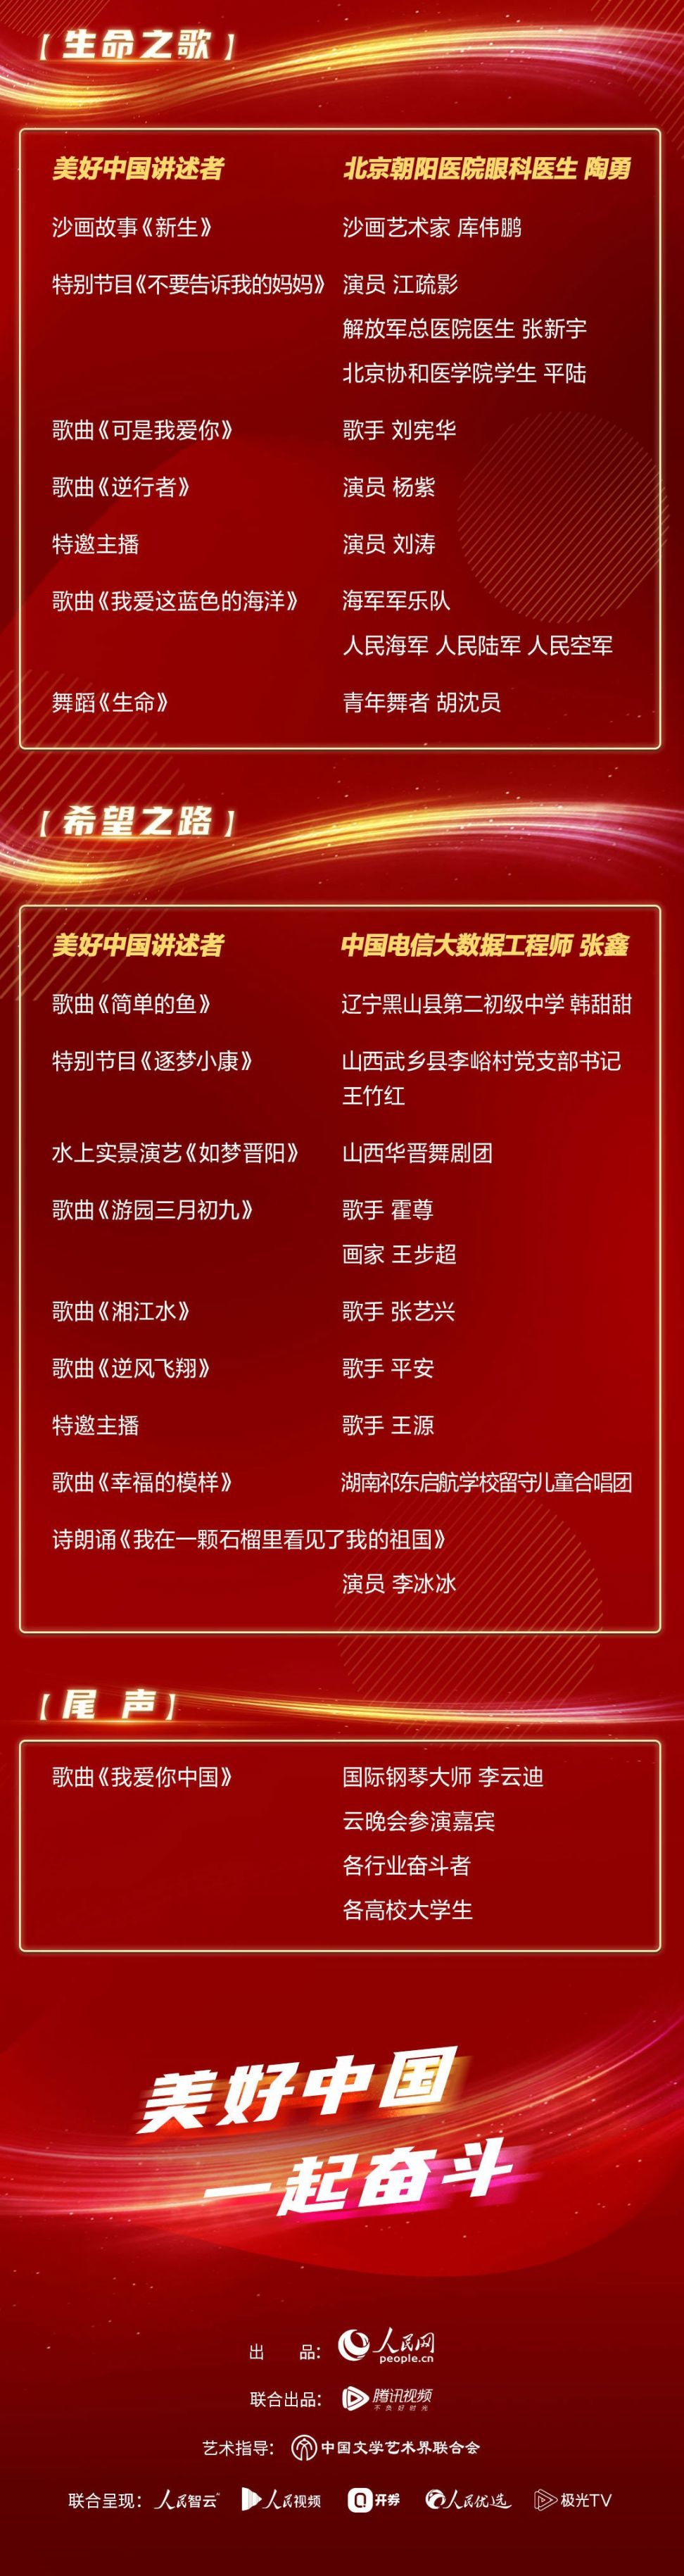 2020美好中国云晚会节目单公布